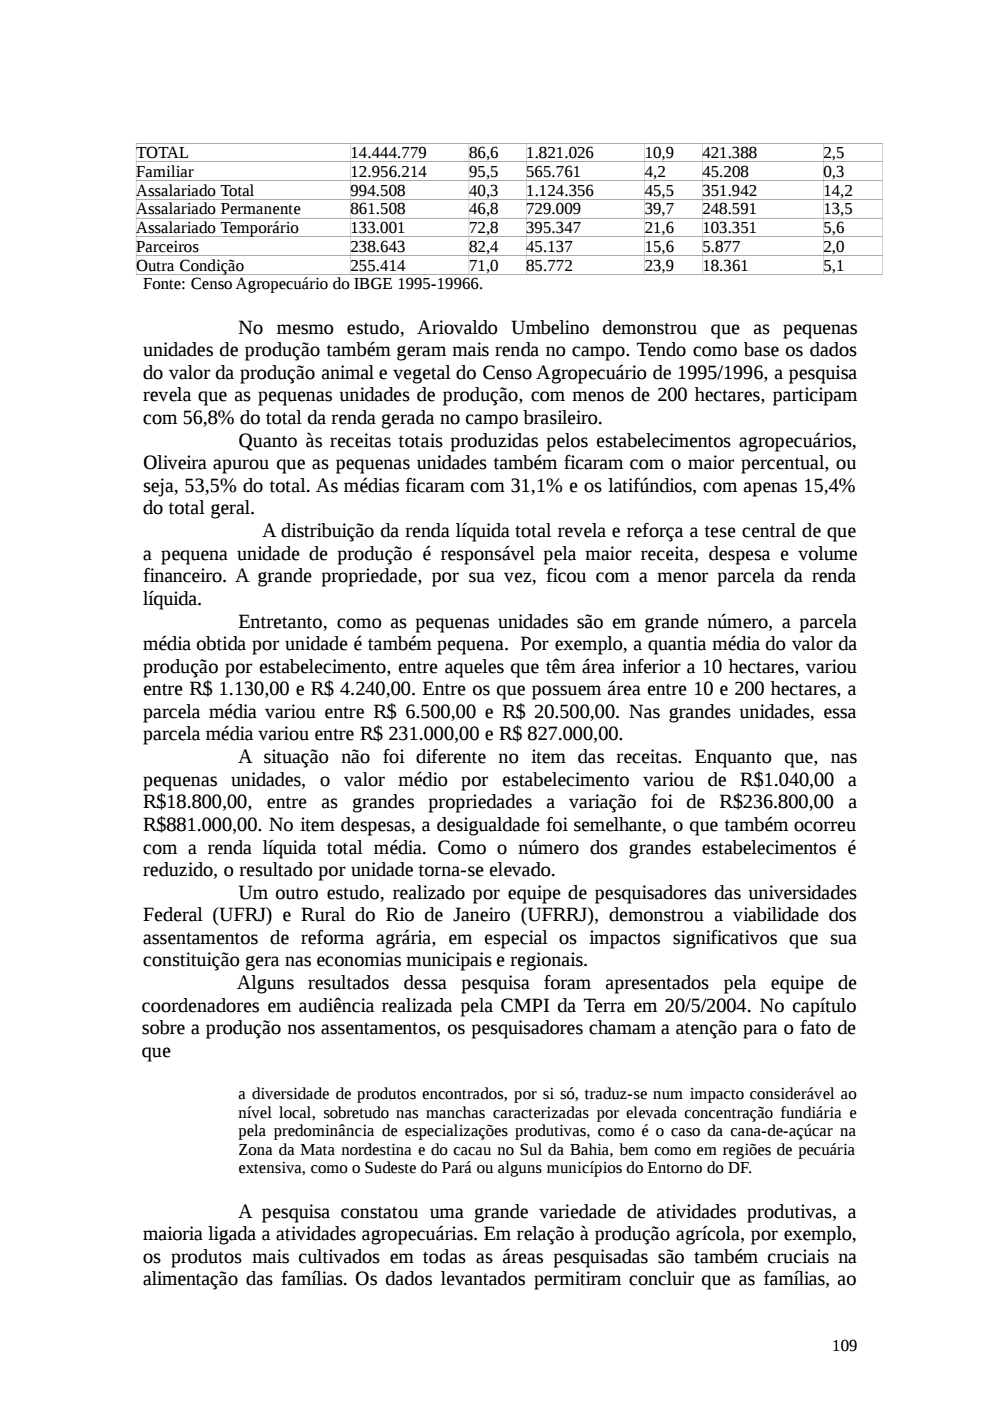 Page 109 from Relatório final da comissão